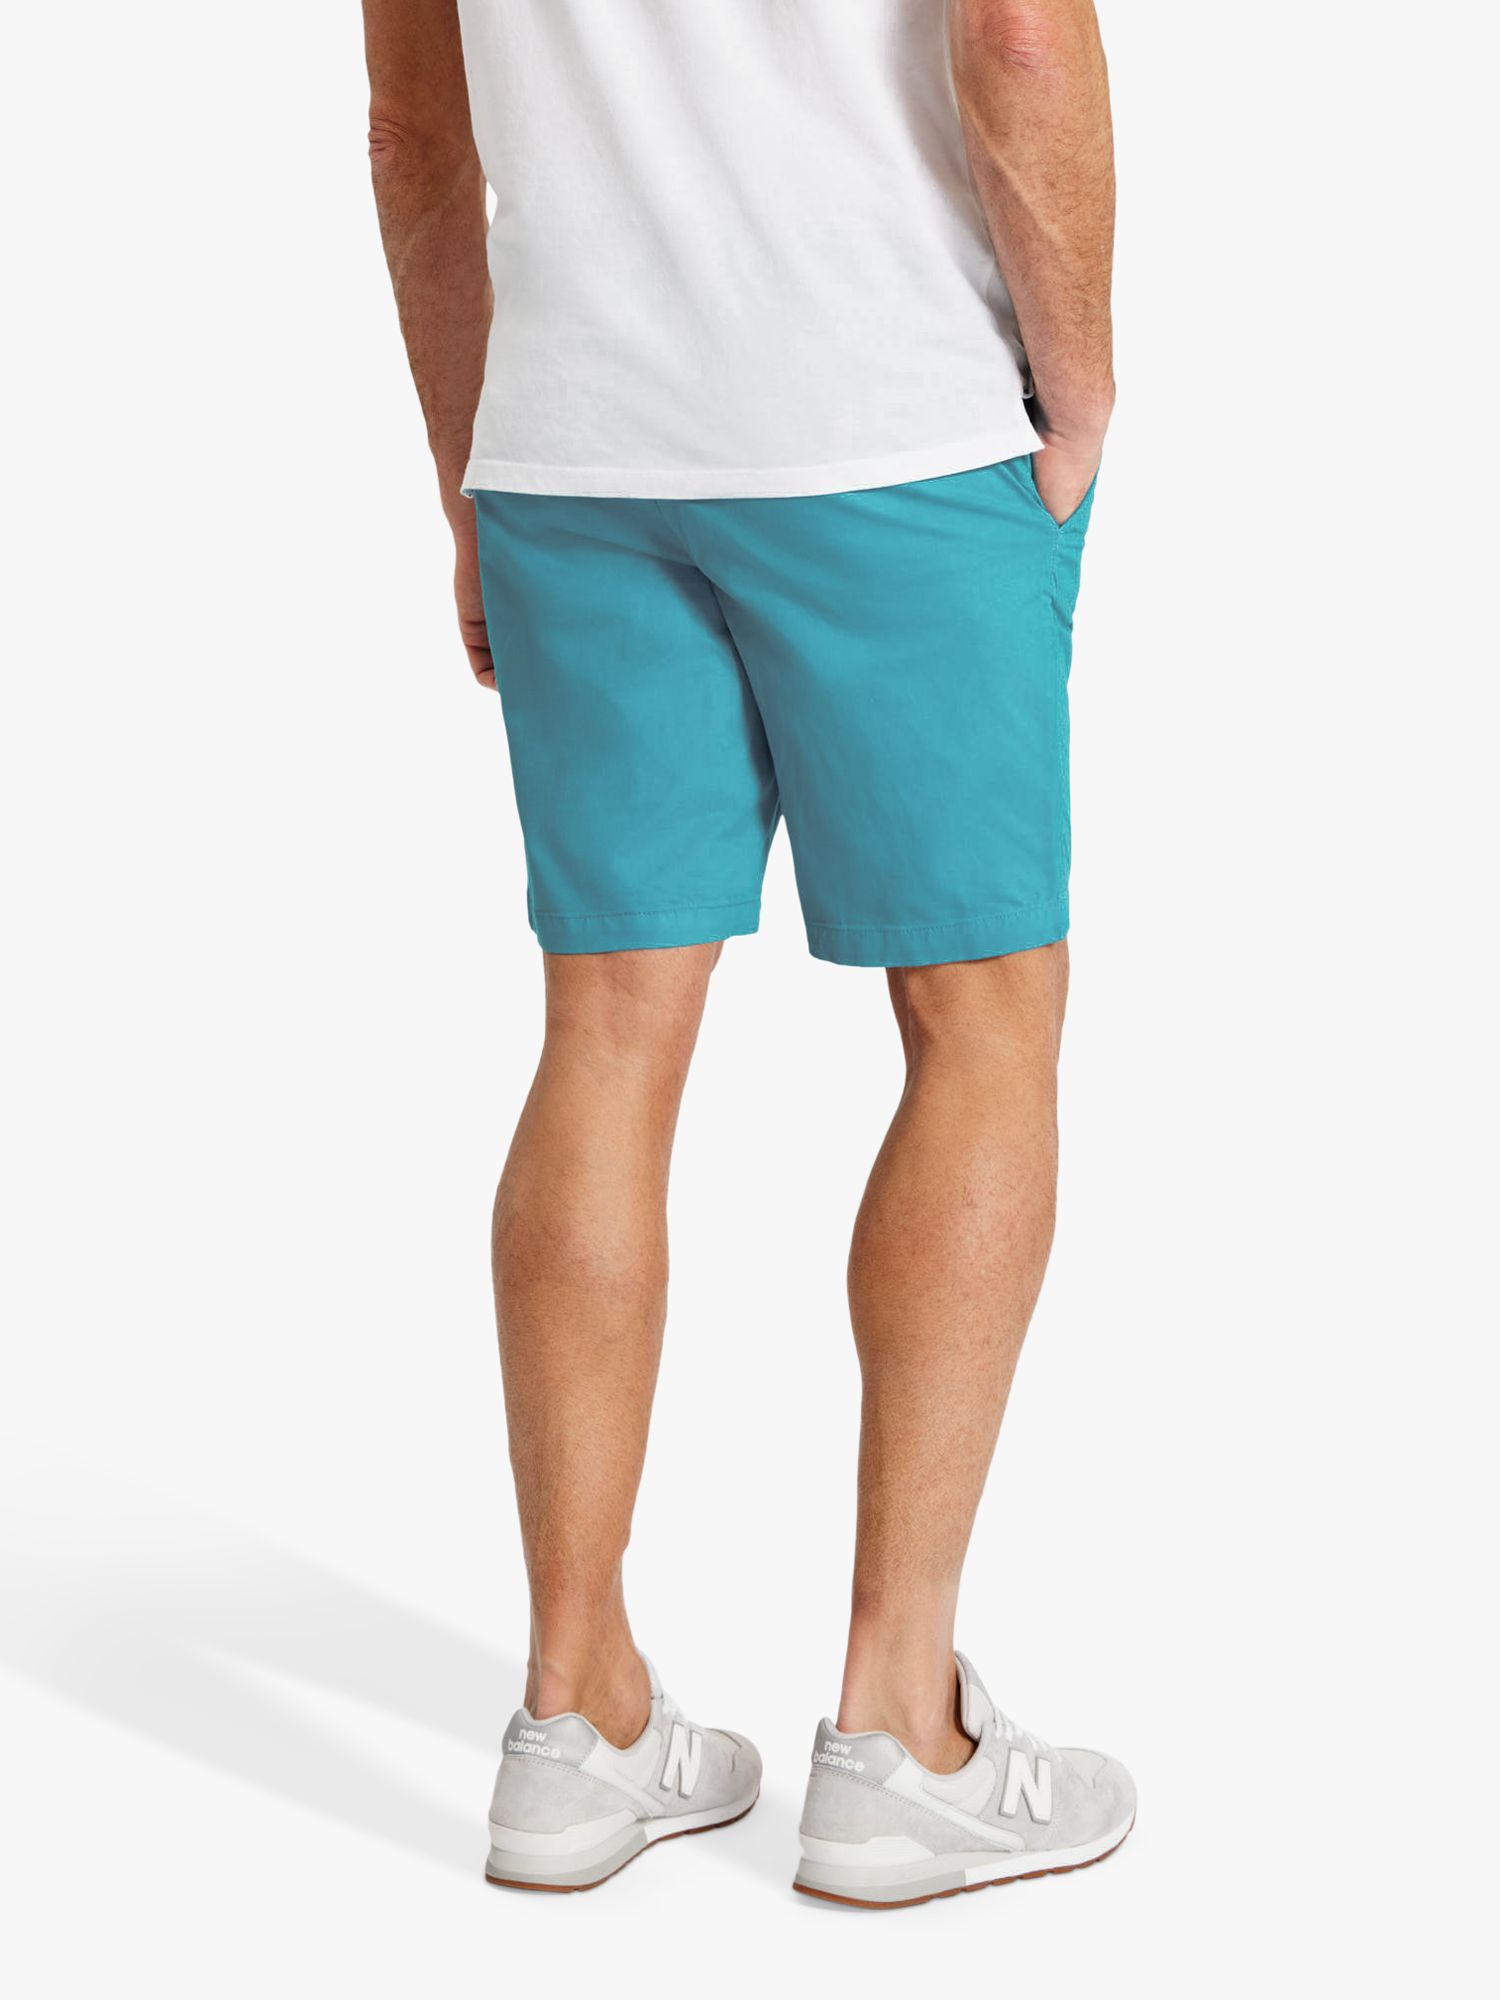 SPOKE Hero Slim Thigh Shorts, Lagoon, 40R